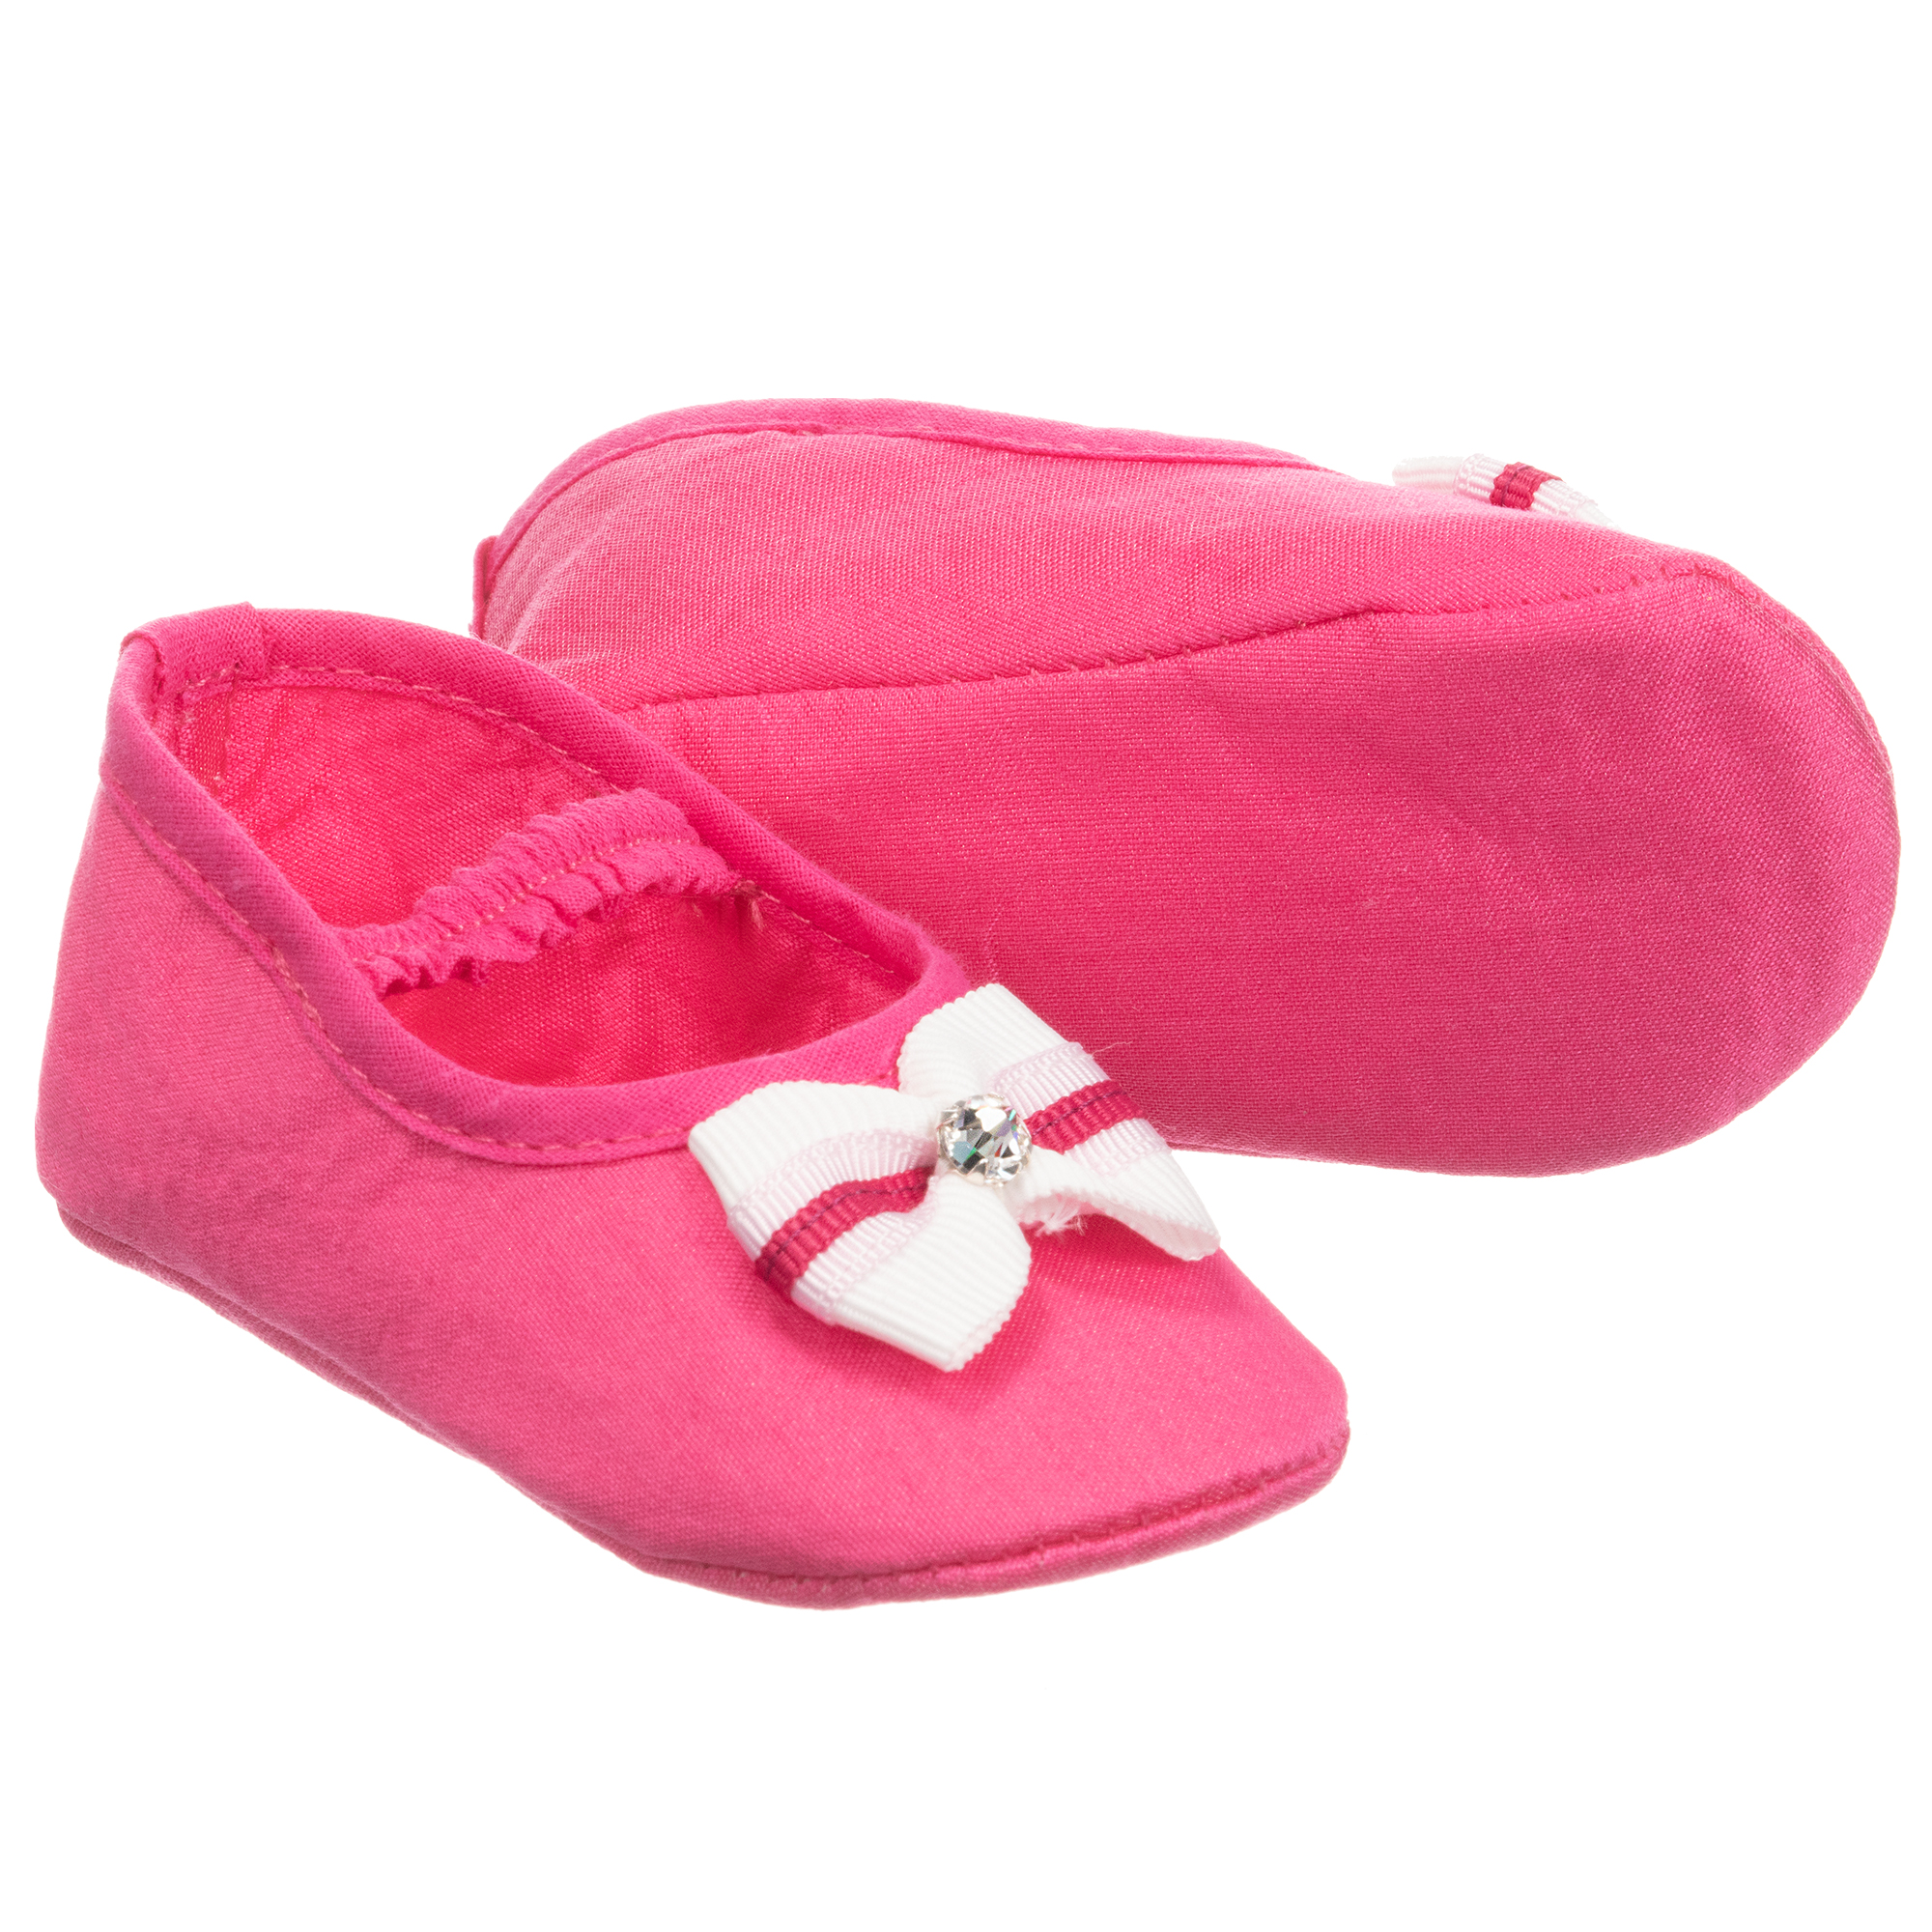 Loredana LòLò - Baby Girls Pink Shoes 